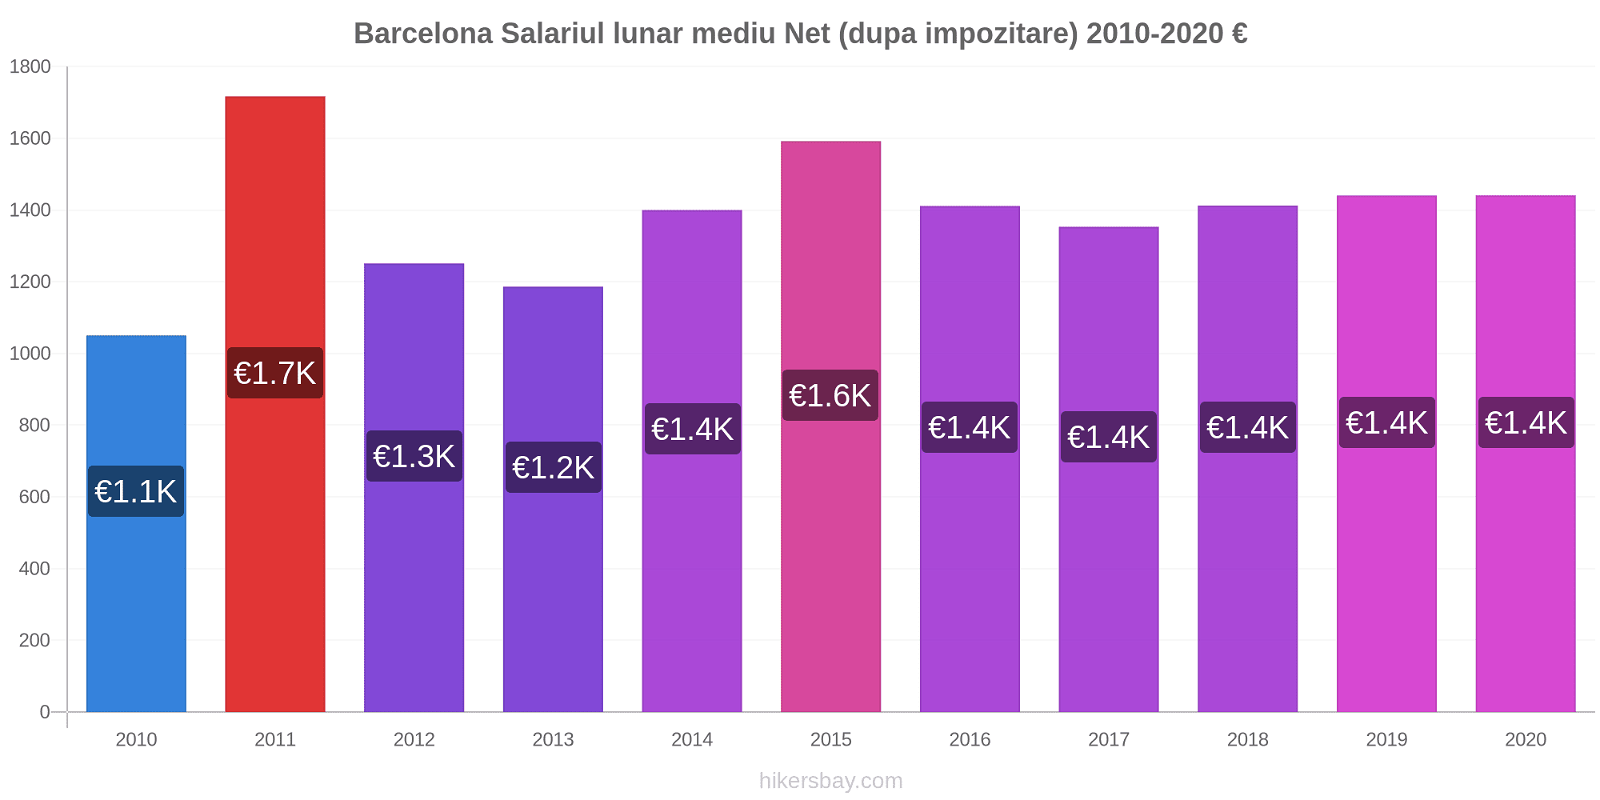 Barcelona modificări de preț Salariul lunar mediu Net (dupa impozitare) hikersbay.com